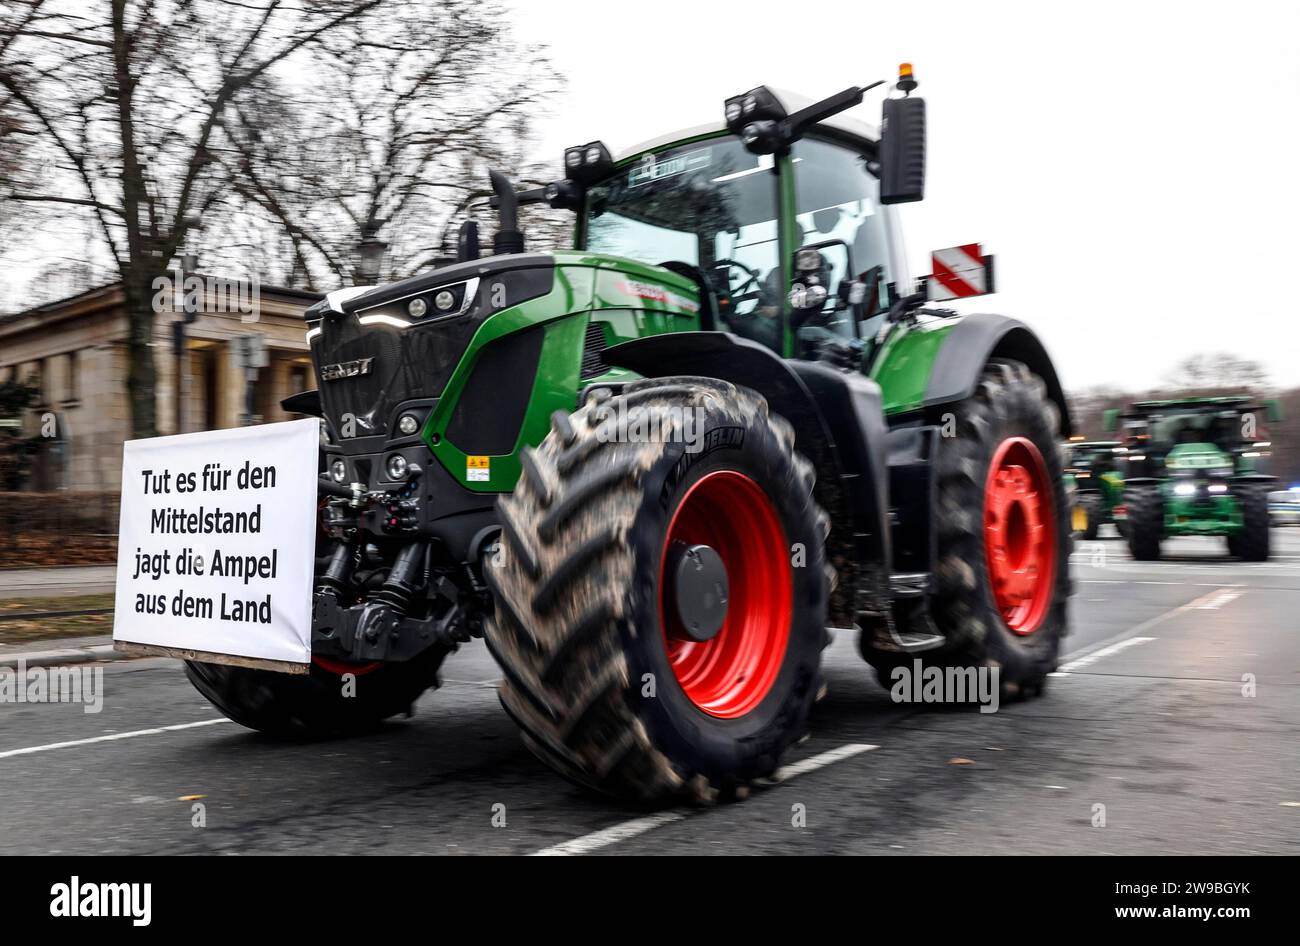 Dimostrazione degli agricoltori, gli agricoltori con i loro trattori protestano contro l'annullamento della sgravio fiscale per il gasolio agricolo, Berlino, 18.12.2023 Foto Stock